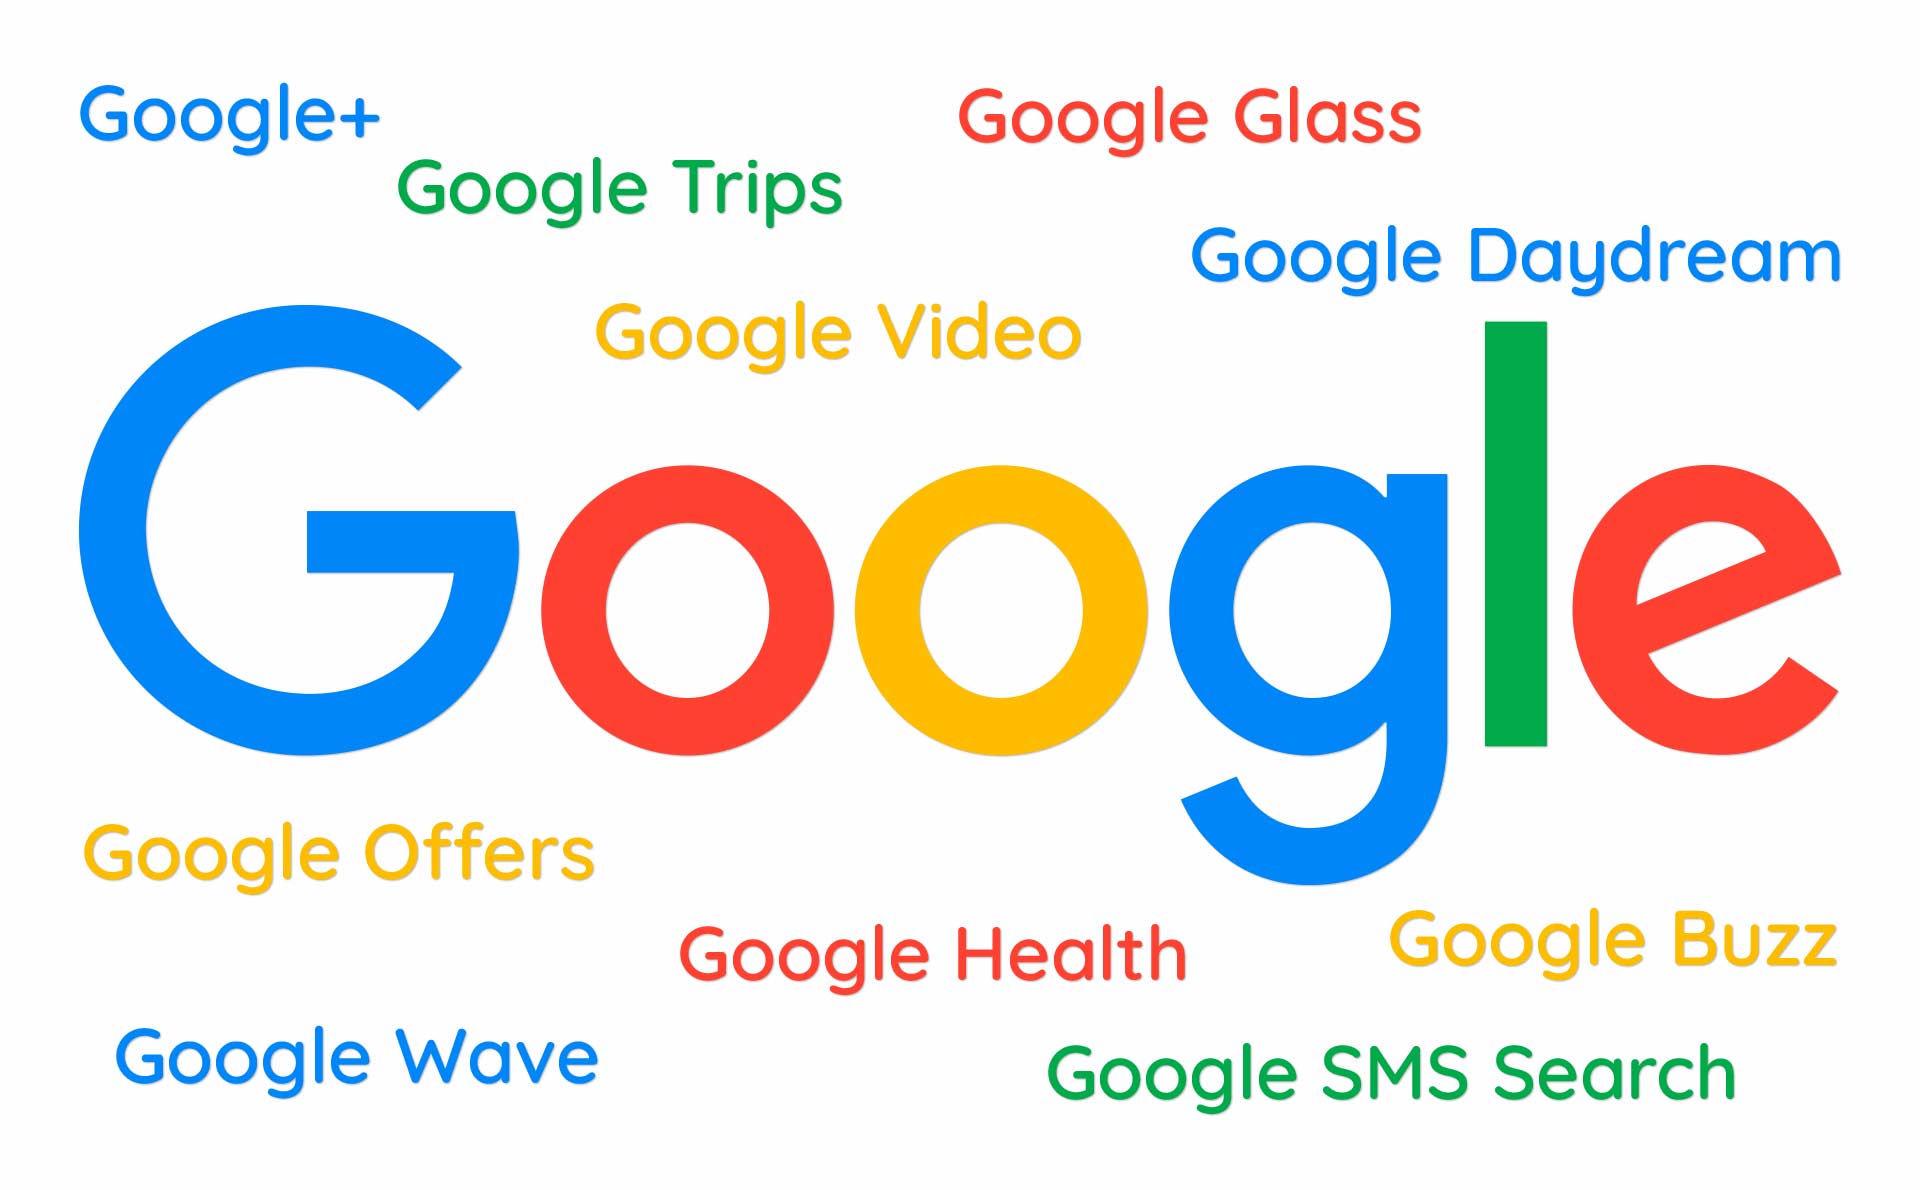 Google propali projekti poput Google Trips, Google Glass, Google Wave i drugih su put do uspeha.